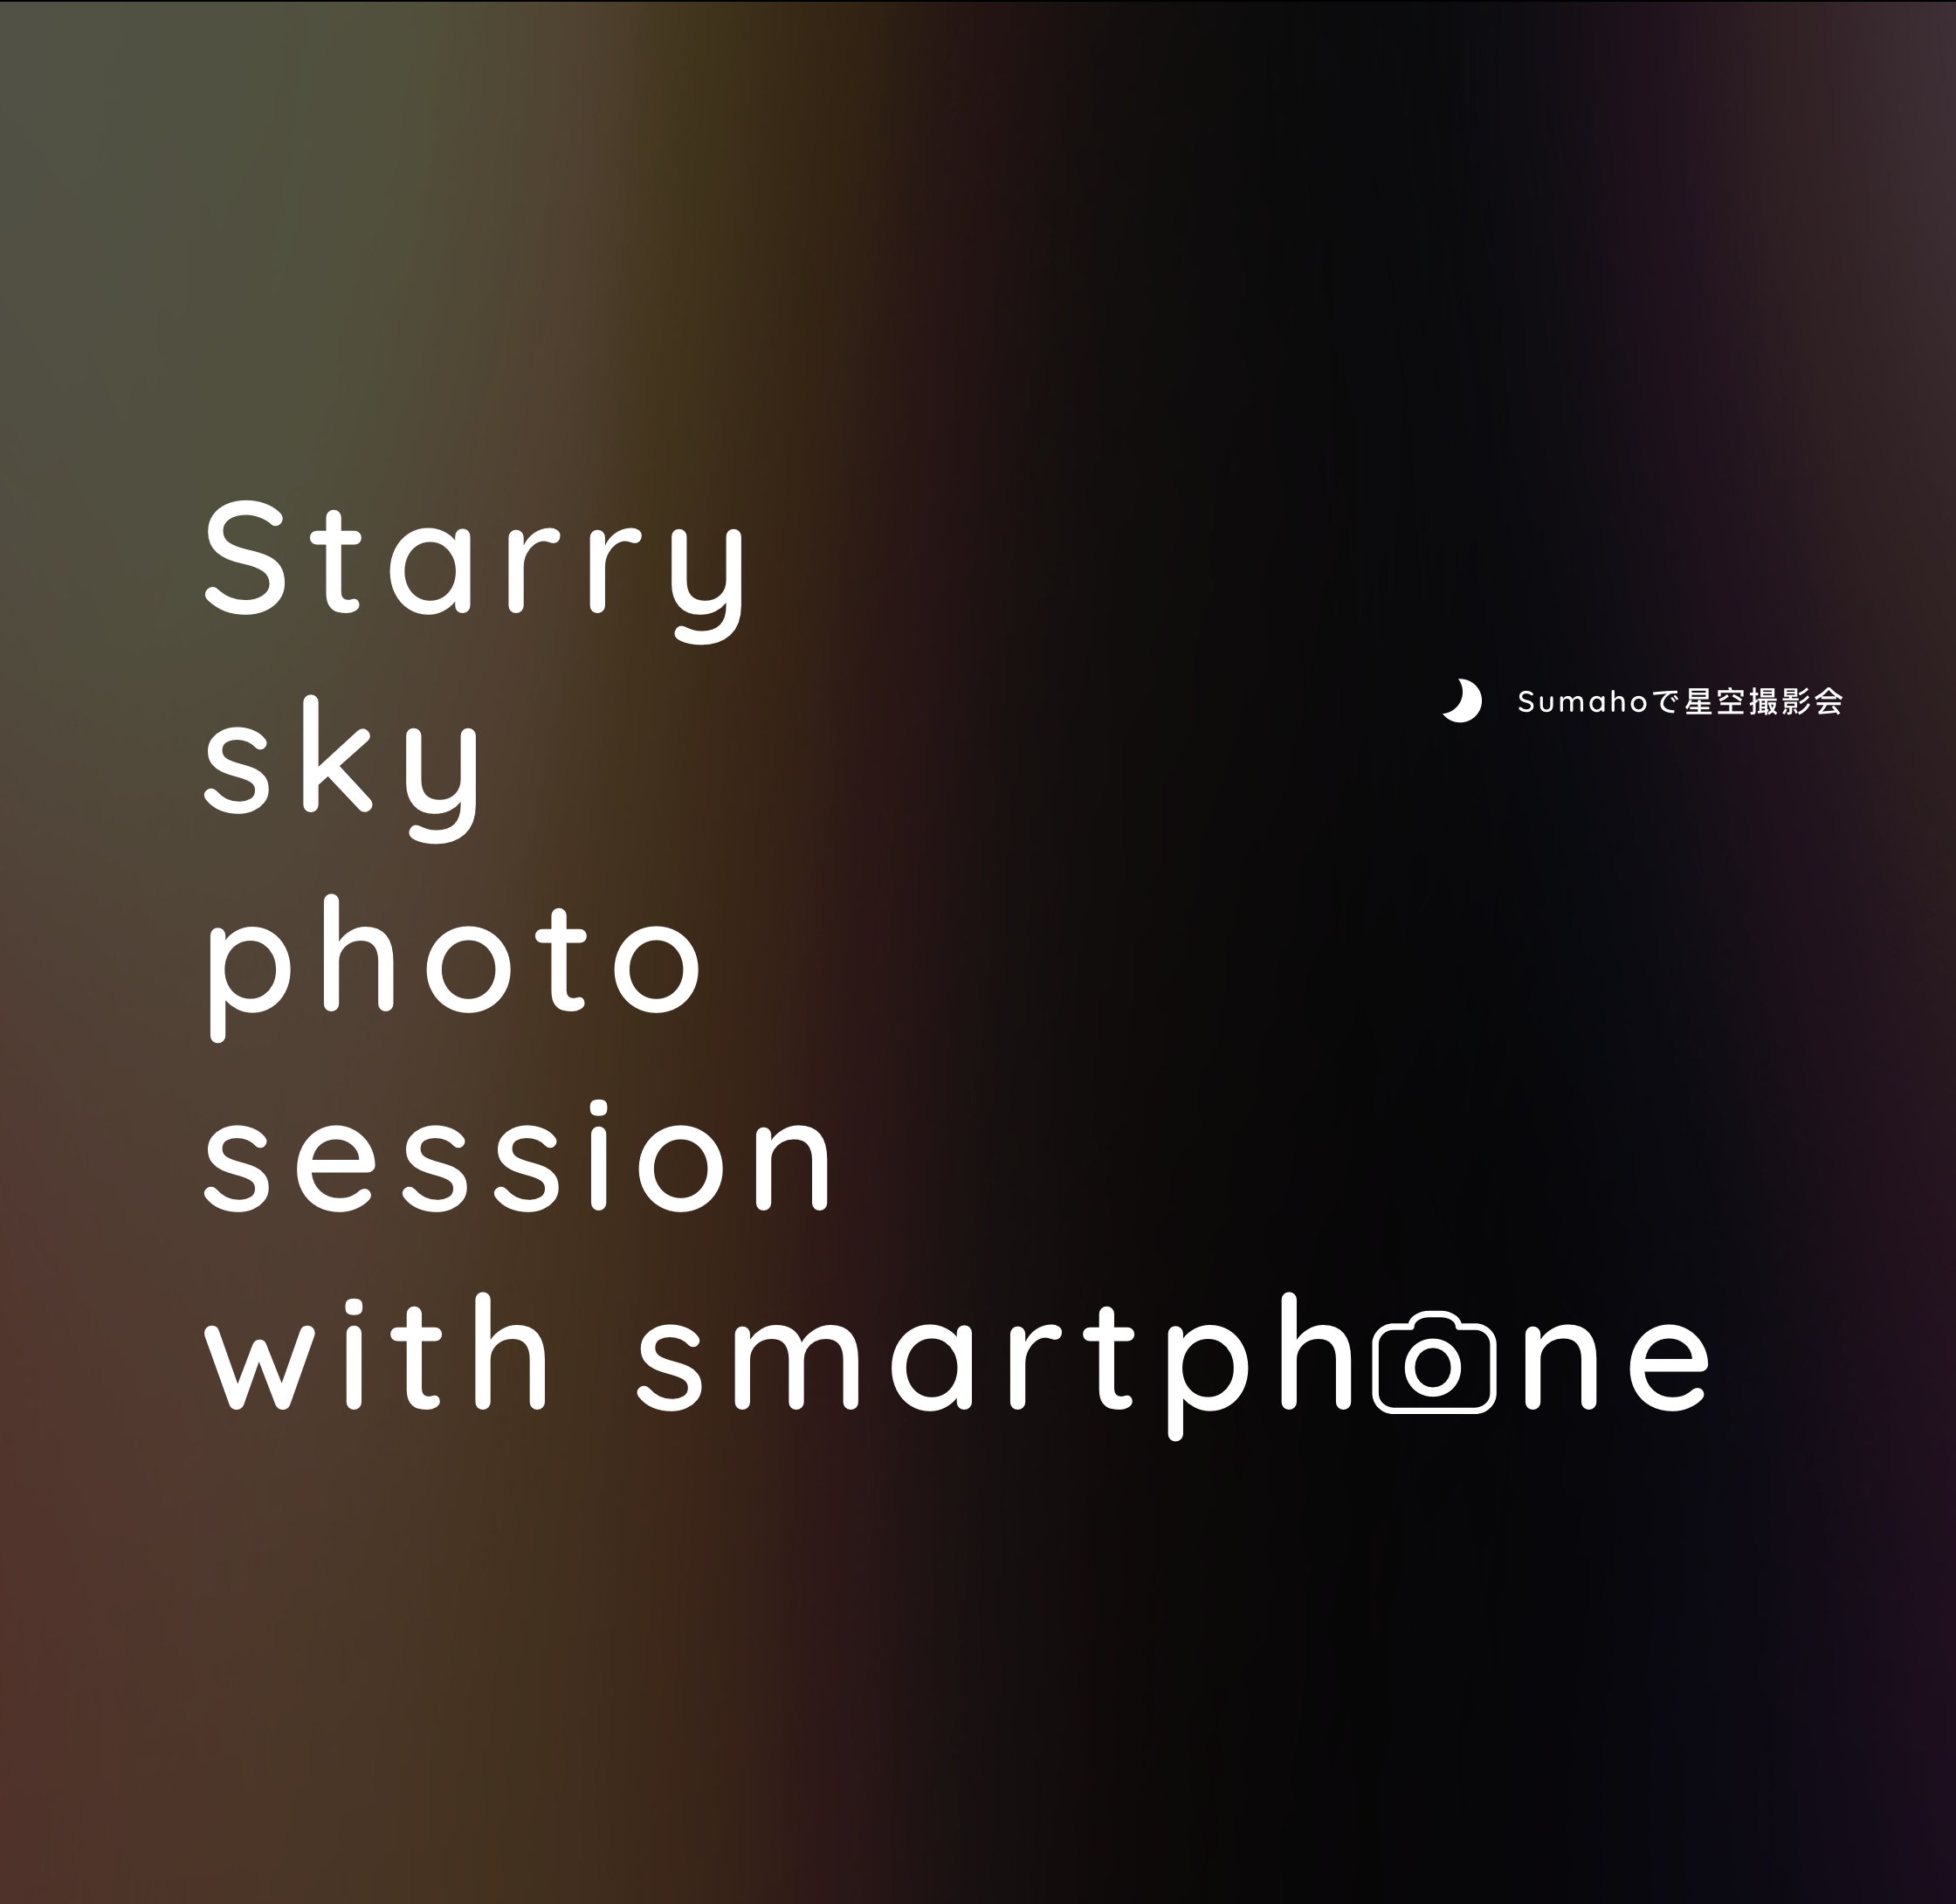 スマホで星空撮影会｜starry sky photo session with smartphone